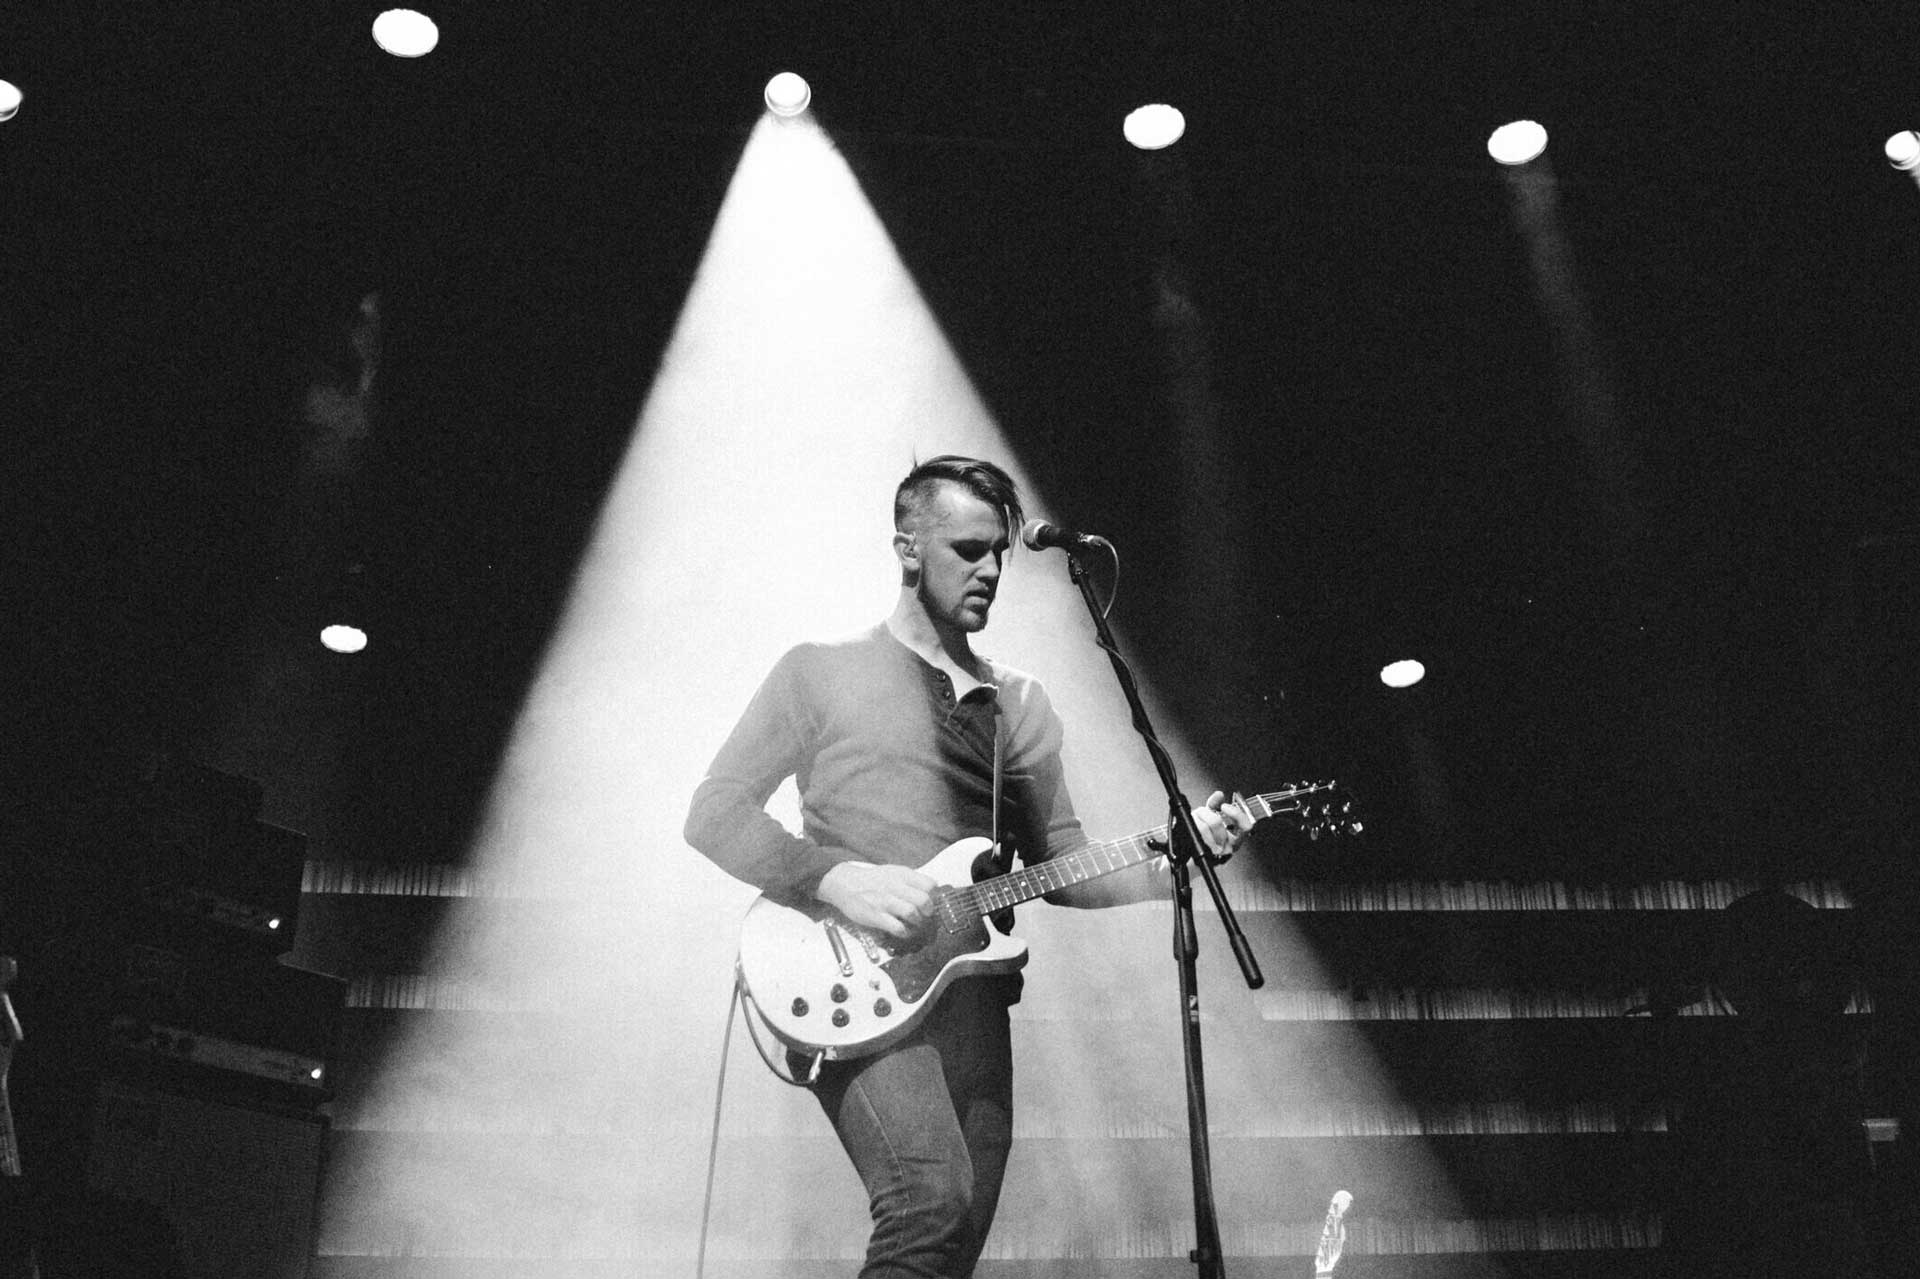 Le musicien Peter Ferguson sur scène, sous la lumière des projecteurs, avec une guitare et un micro